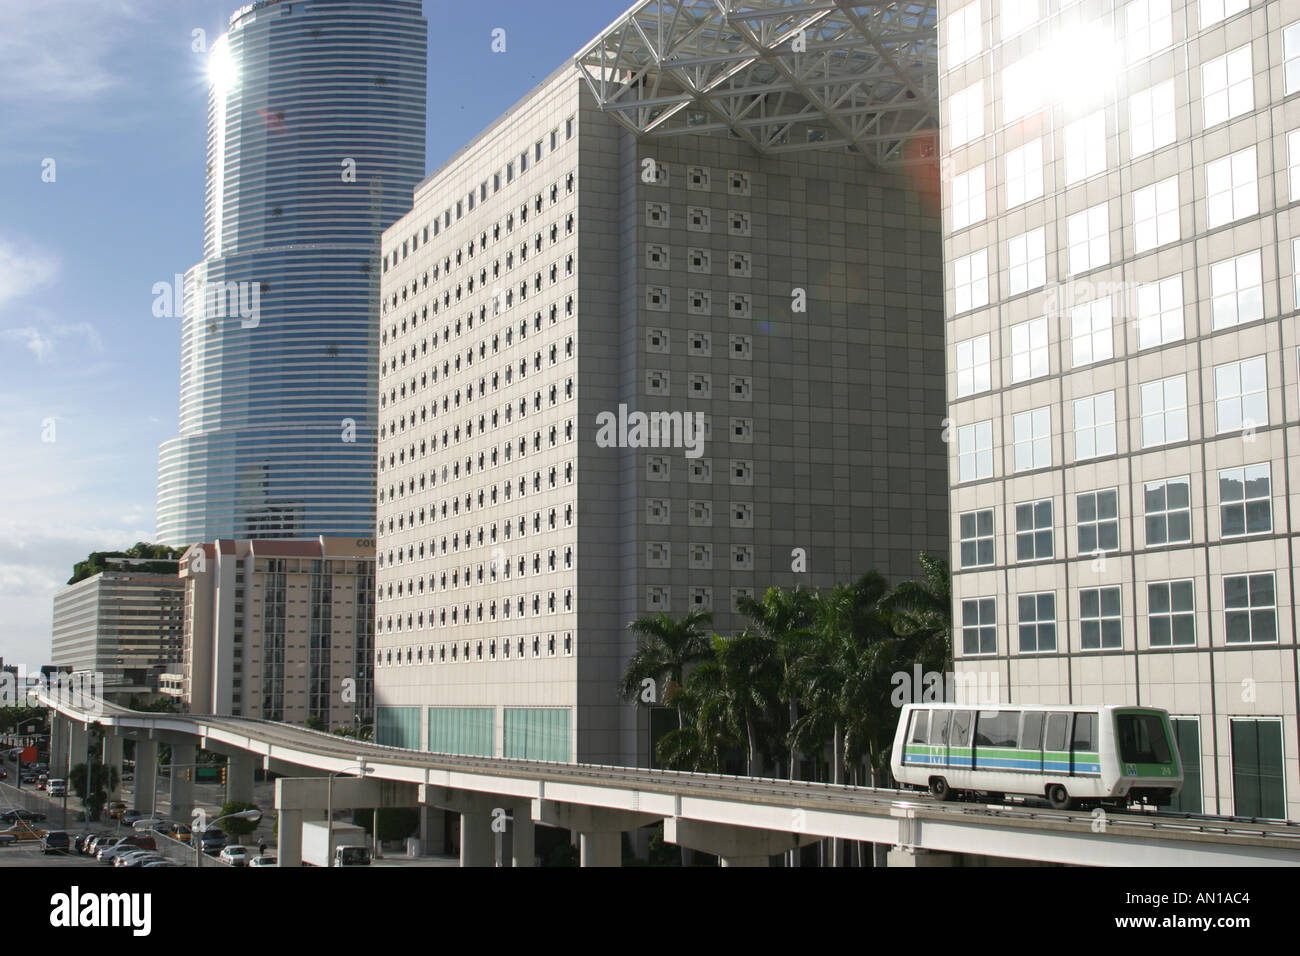 Miami Florida,Biscayne Boulevard,Metro Mover passant par les immeubles de bureaux du centre-ville,panorama urbain,horizon urbain,paysage urbain,architecture,architecture Banque D'Images